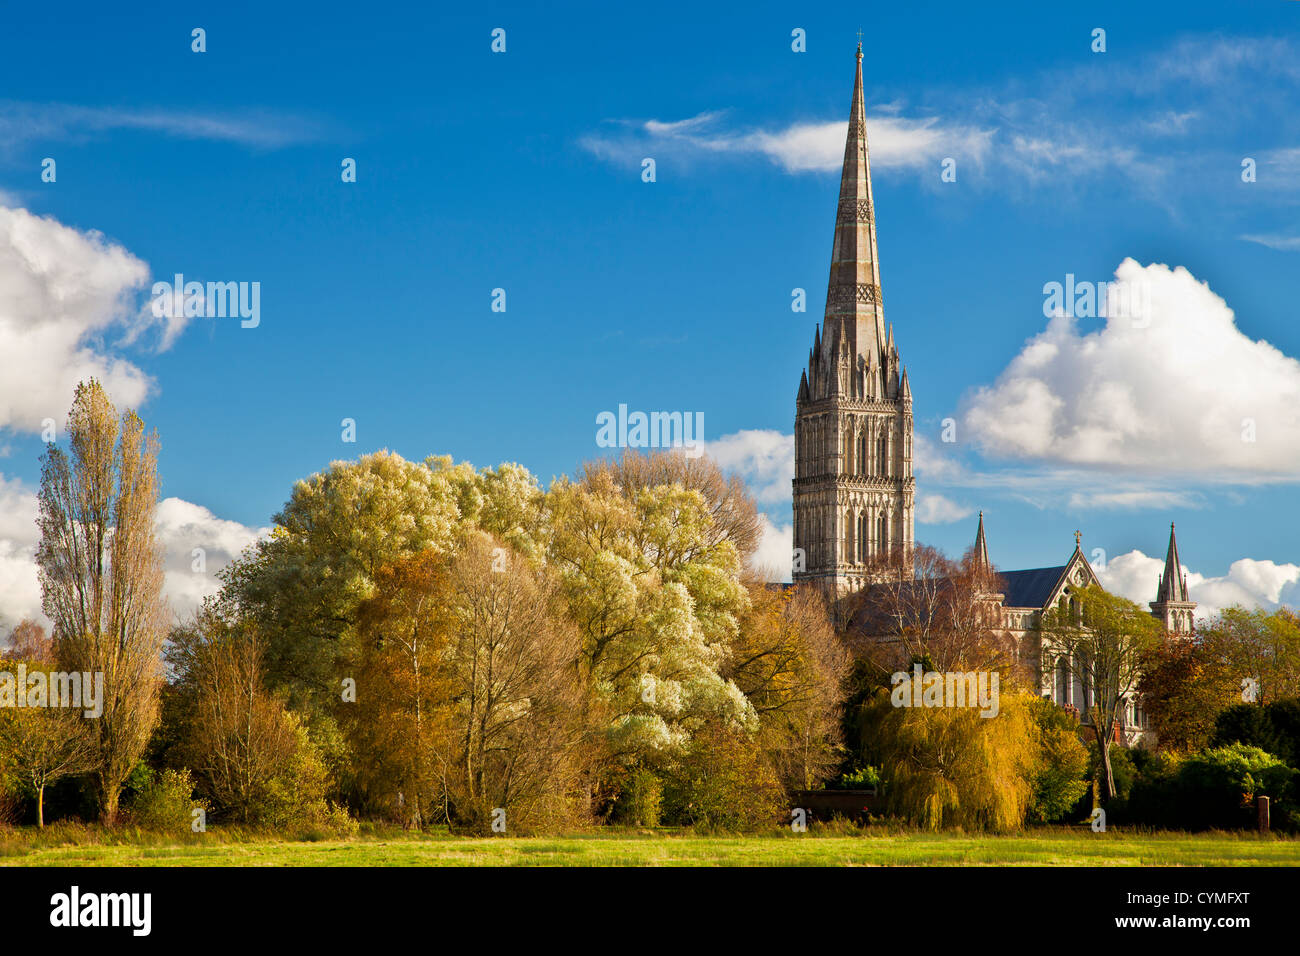 Une vue d'automne de la flèche de la cathédrale de Salisbury, Wiltshire médiévale, England, UK à travers l'eau 68 London Meadows. Banque D'Images